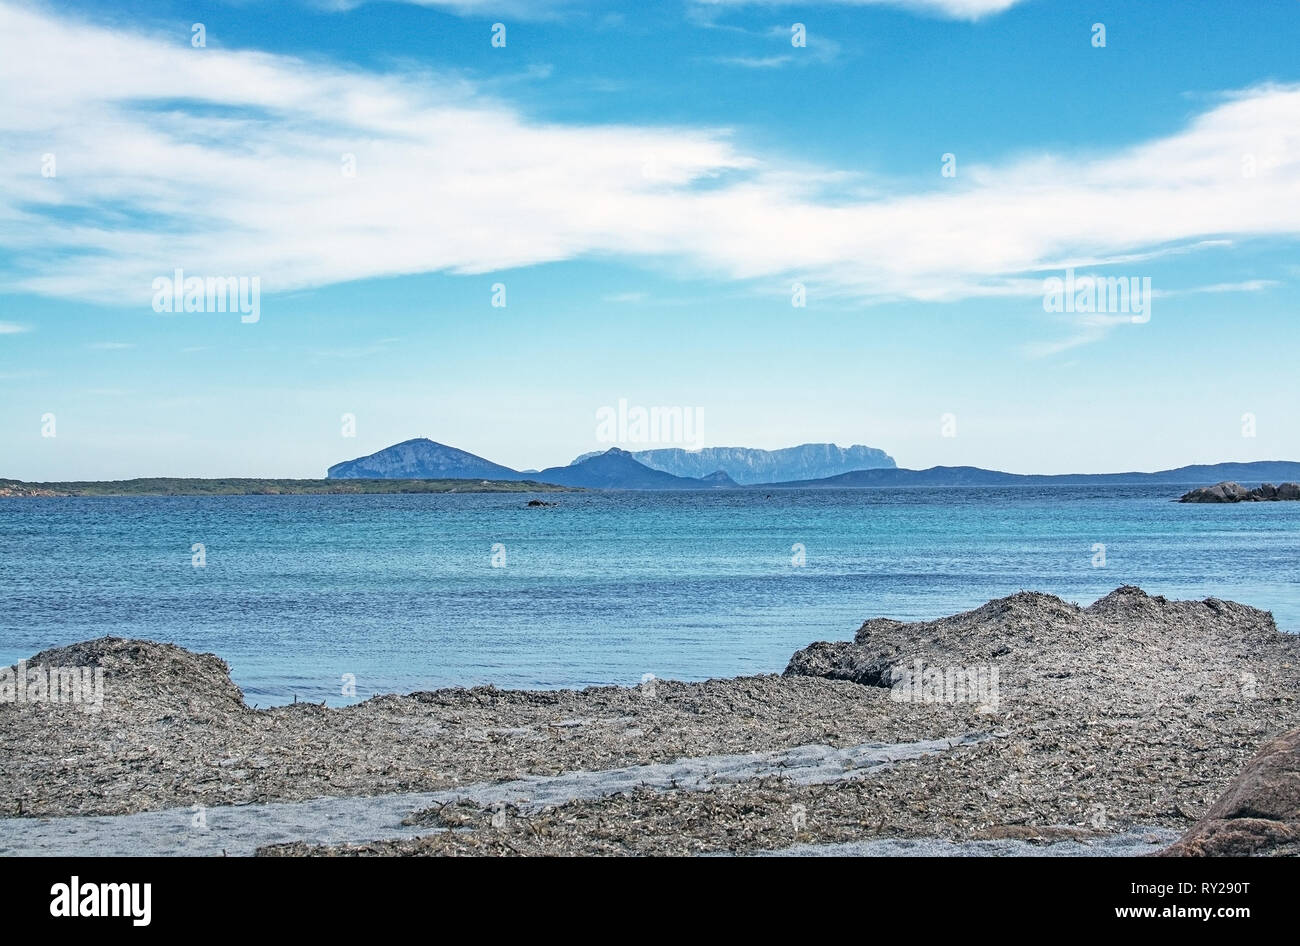 Verde acqua e divertente di roccia di granito forme su una spiaggia in Costa Smeralda, Sardegna, Italia nel mese di marzo. Foto Stock